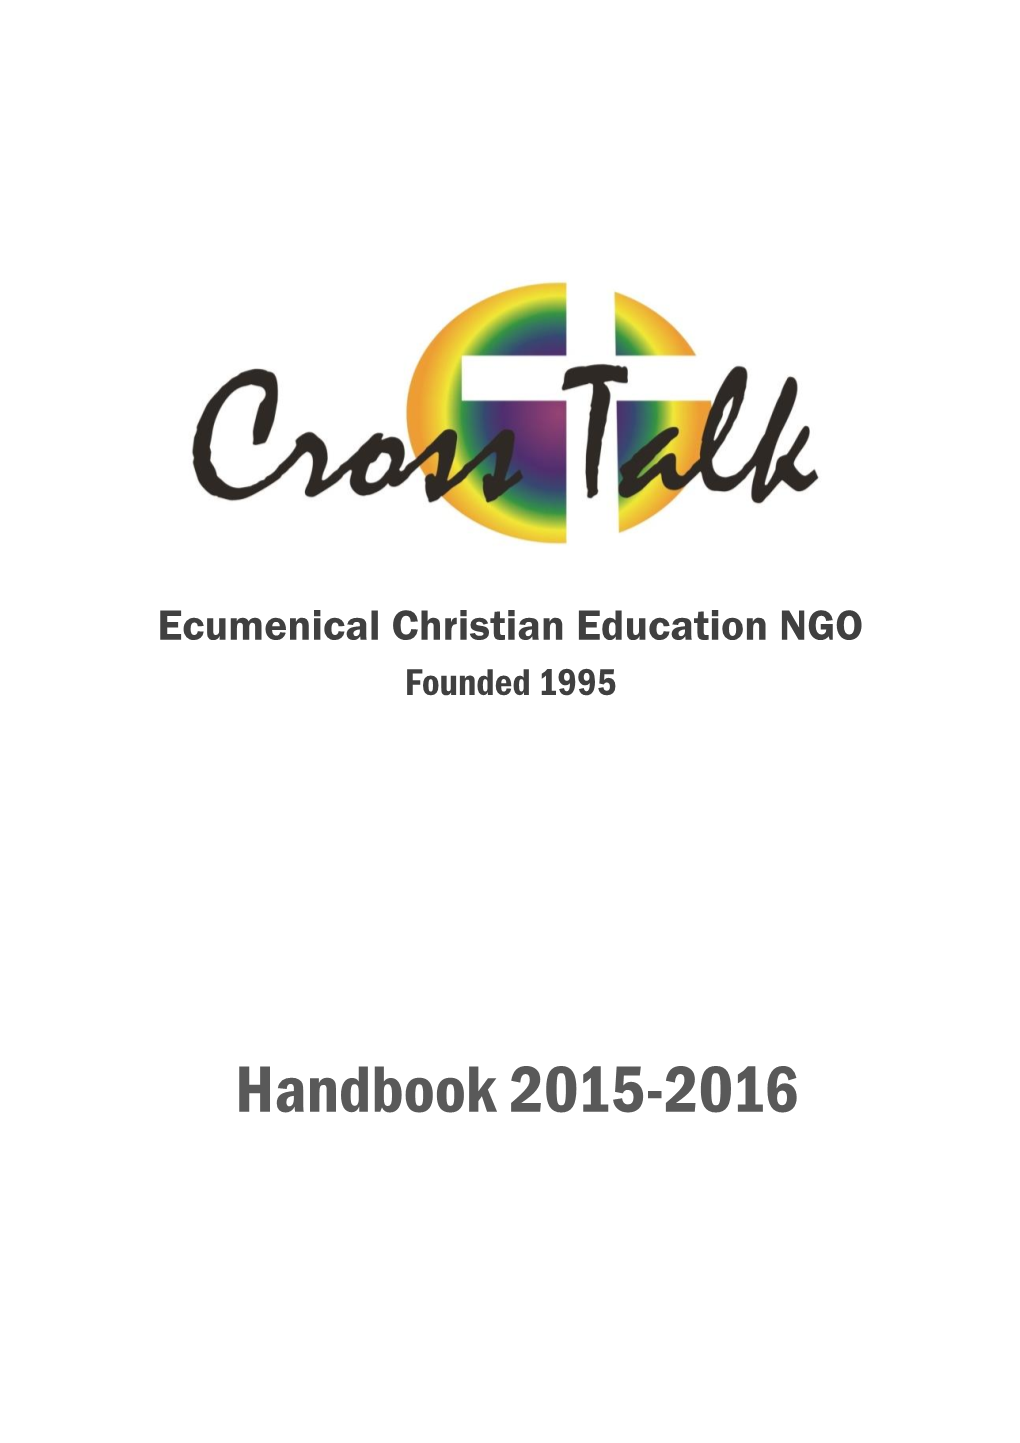 Ecumenical Christian Education NGO Founded 1995